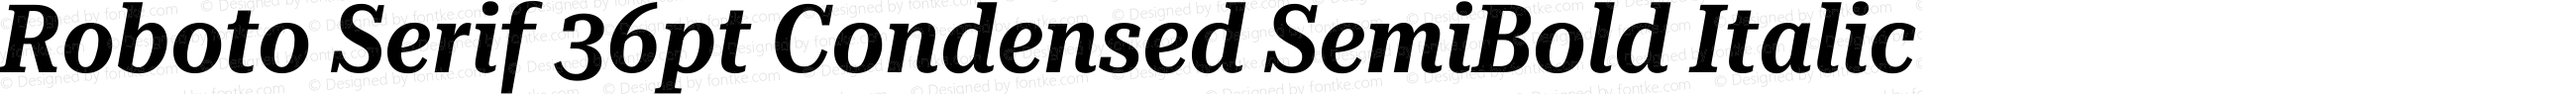 Roboto Serif 36pt Condensed SemiBold Italic